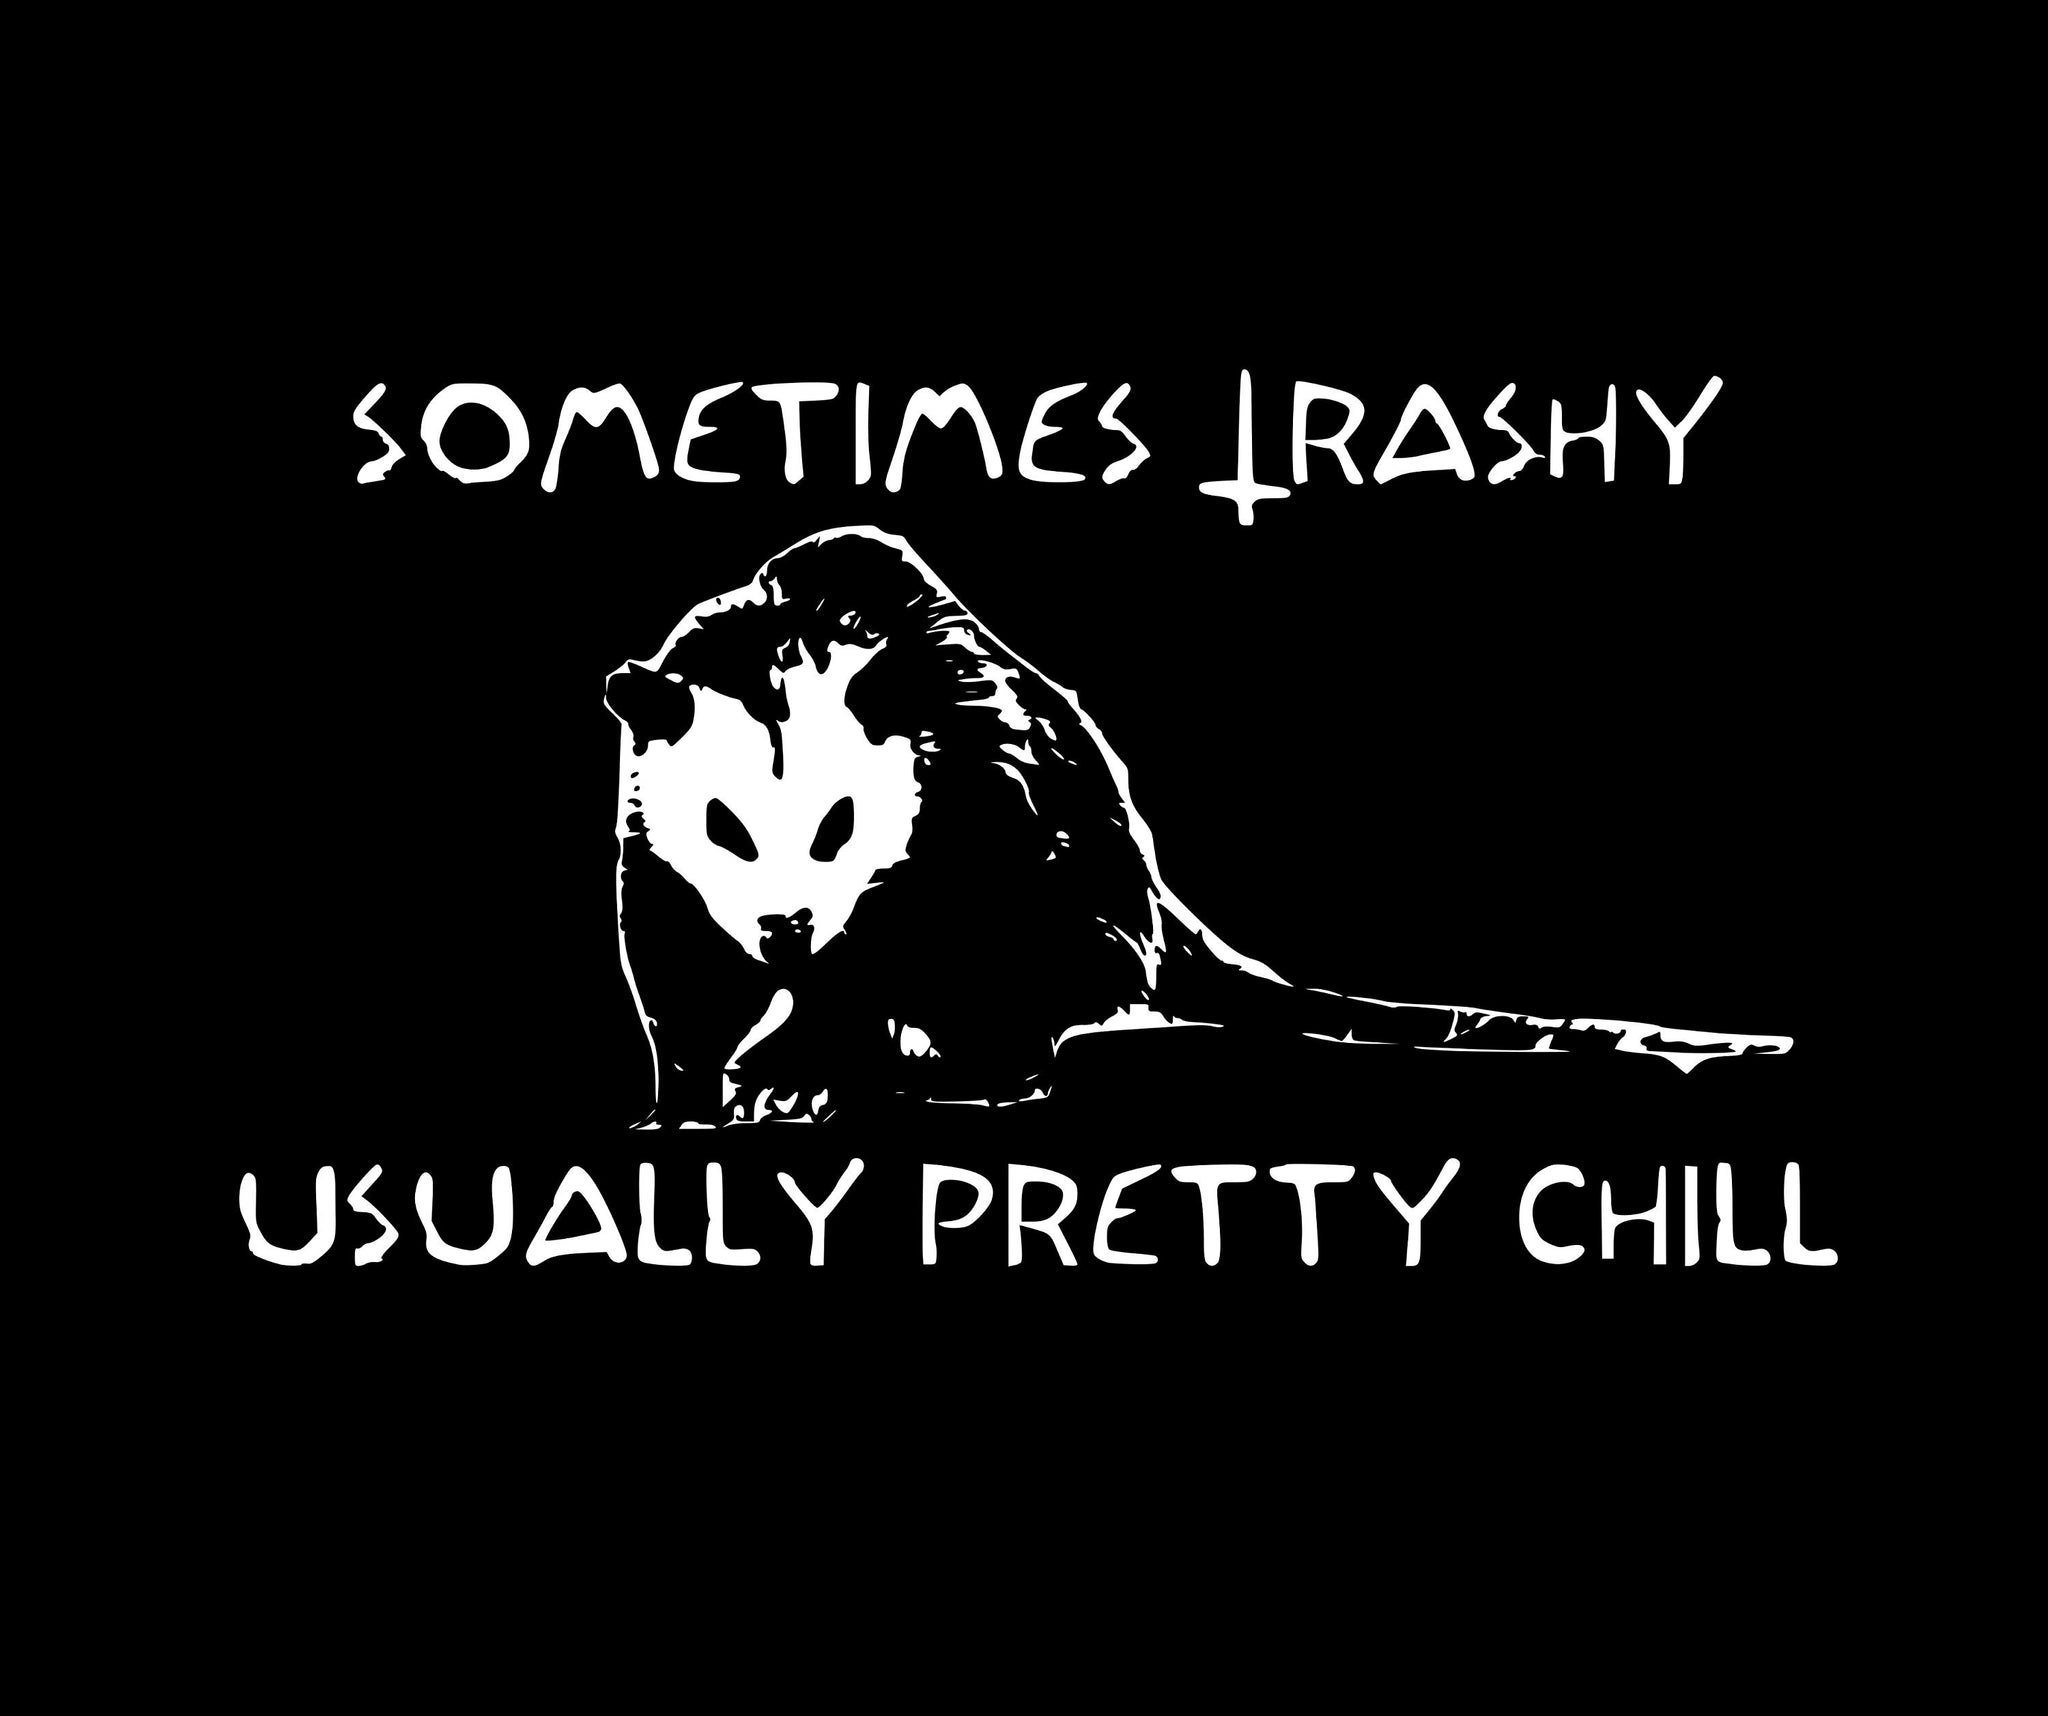 Sometimes Trashy, Usually Pretty Chill possum tee